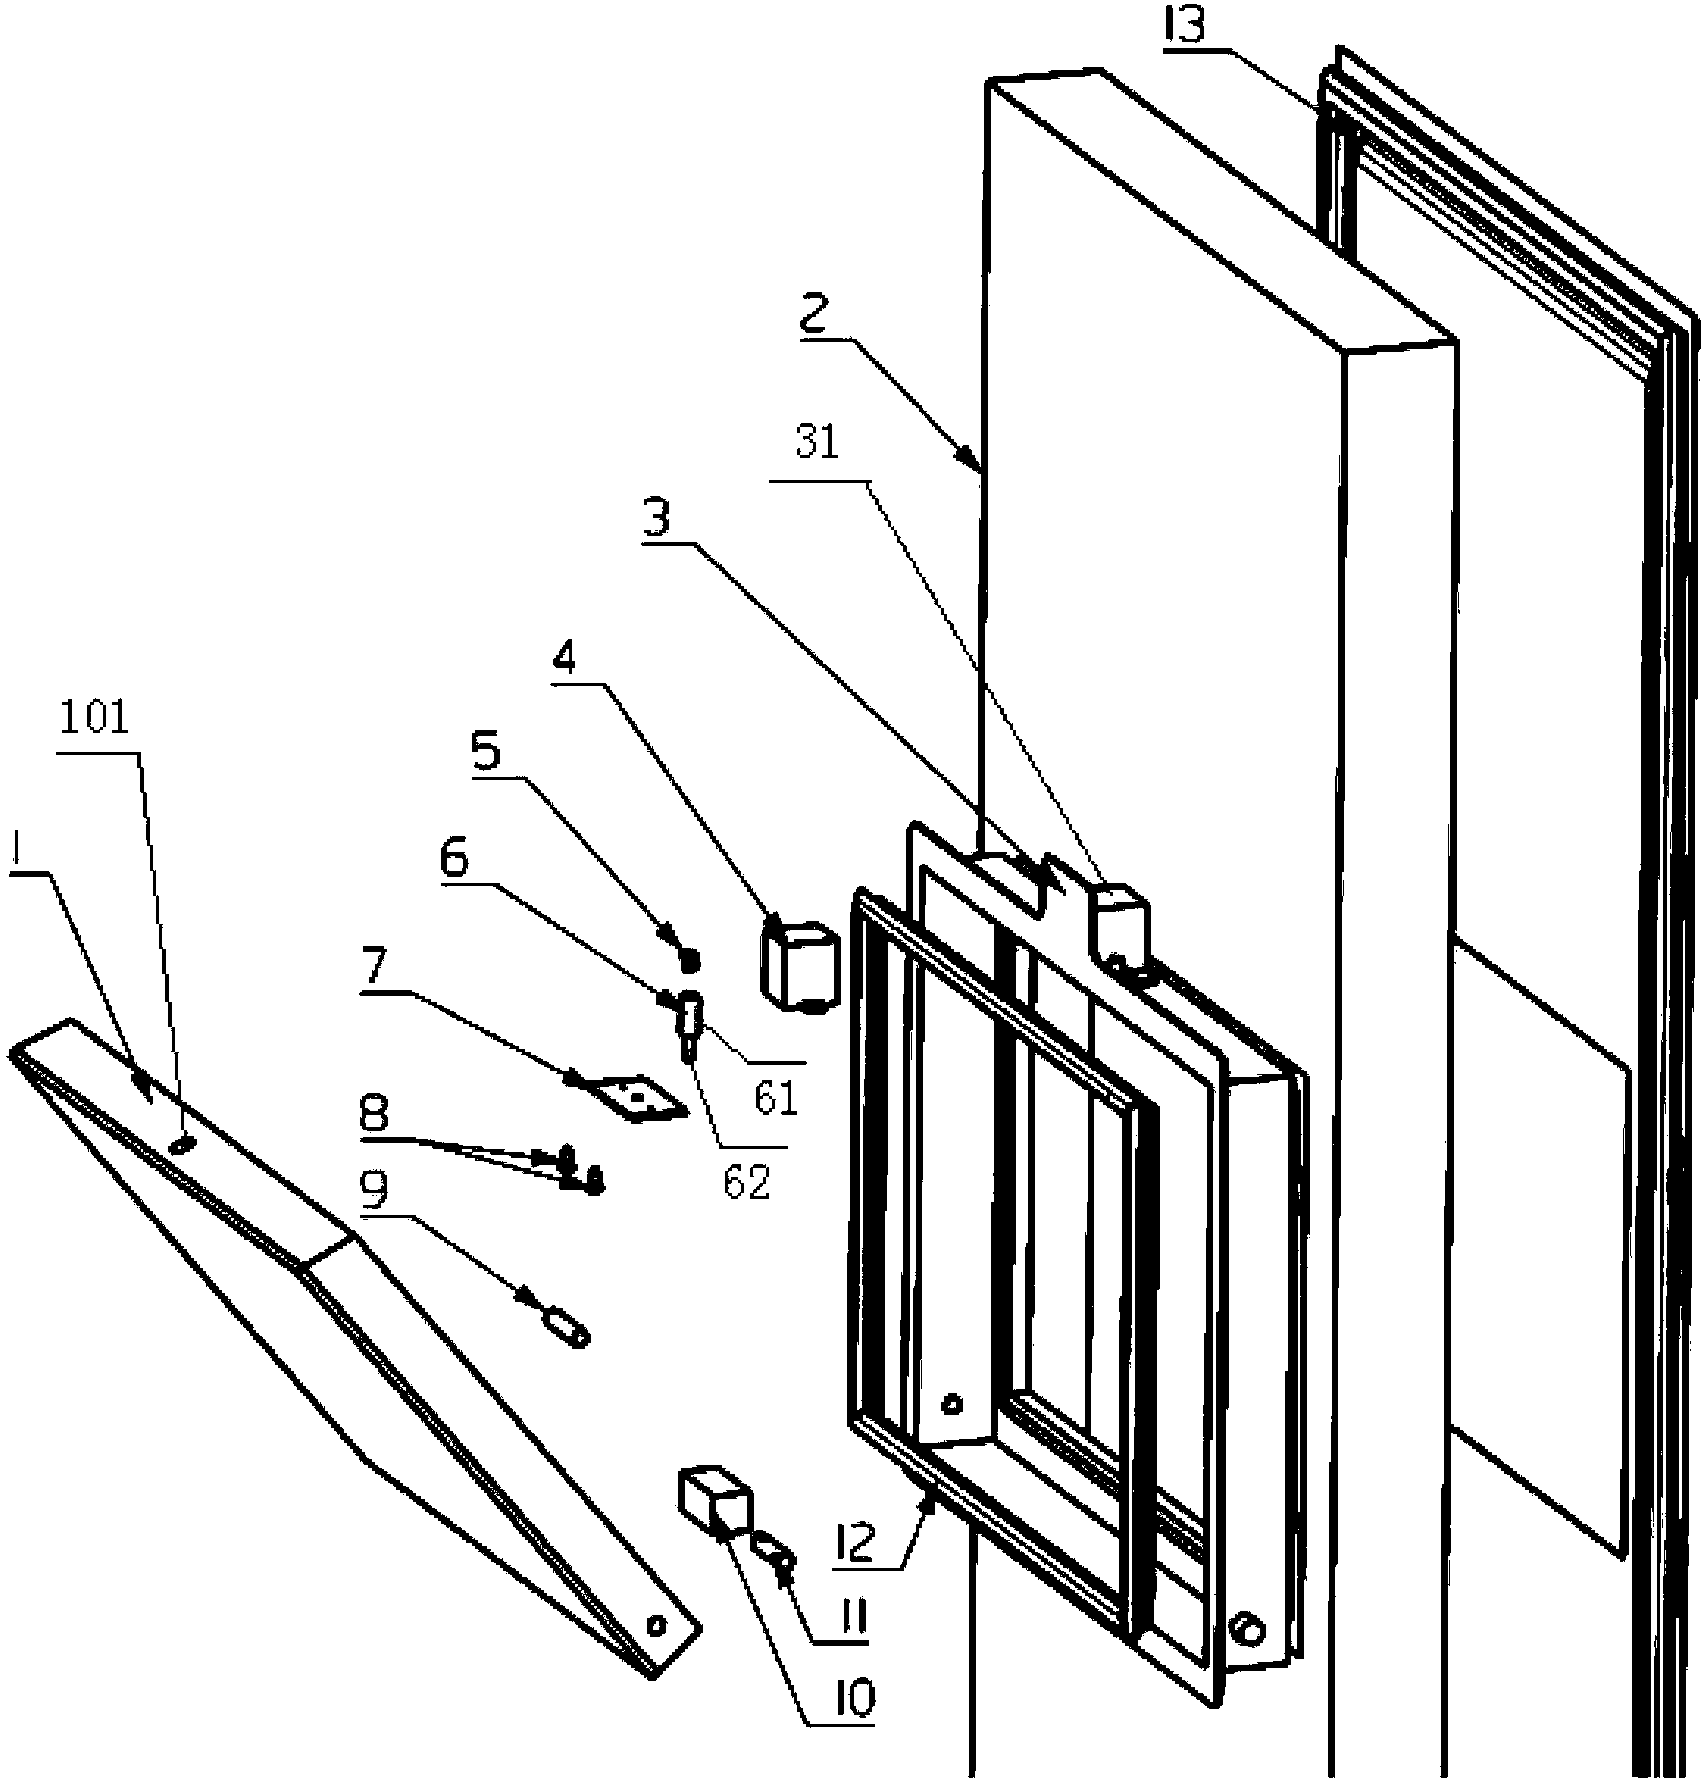 Door-in-door structure of fridge